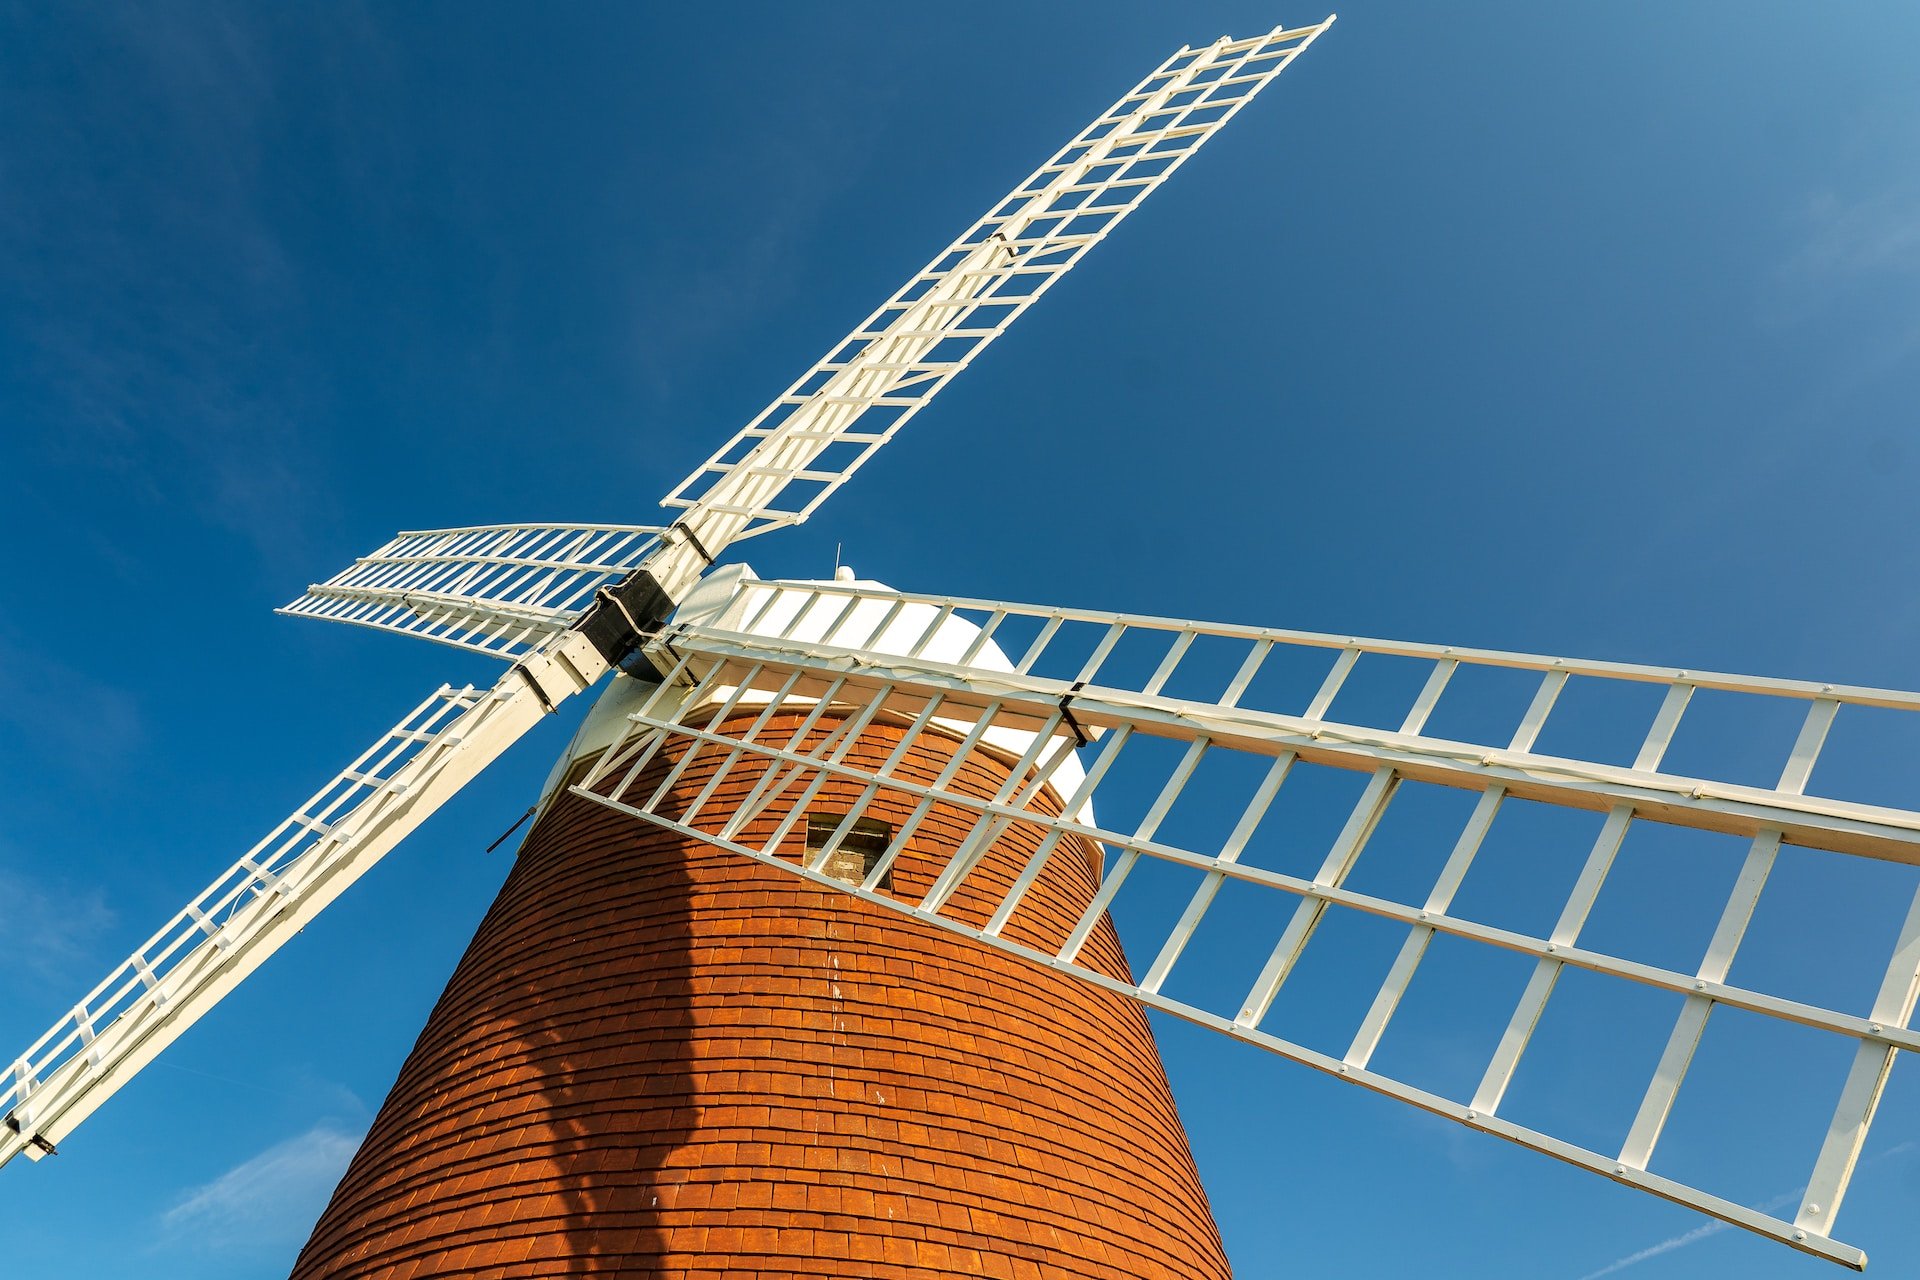 Halnaker Windmill near Chichester, West Sussex